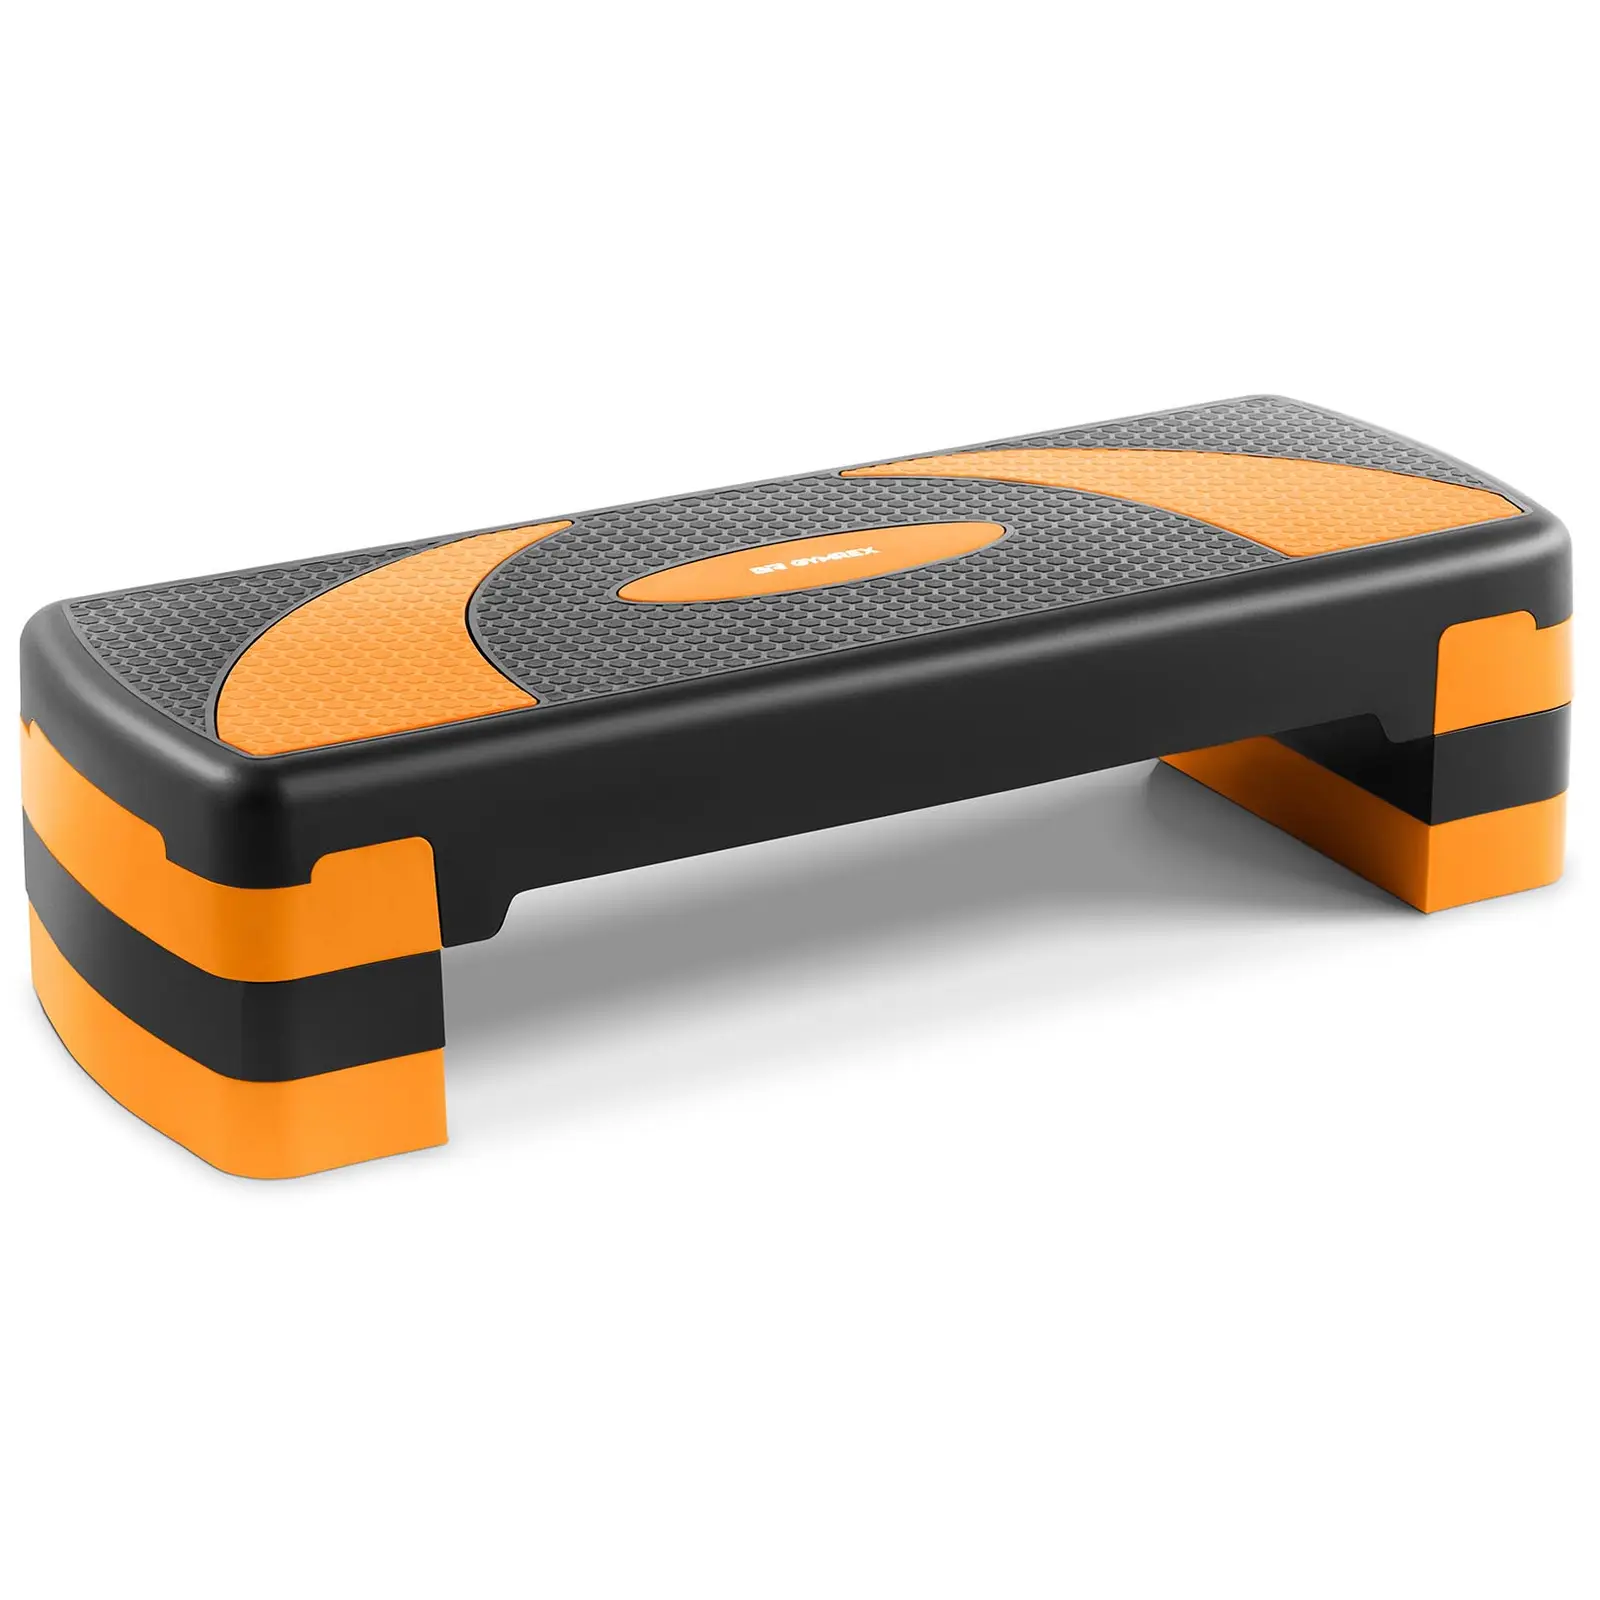 Step fitness - Réglable en hauteur - 100 kg - Noir/orange